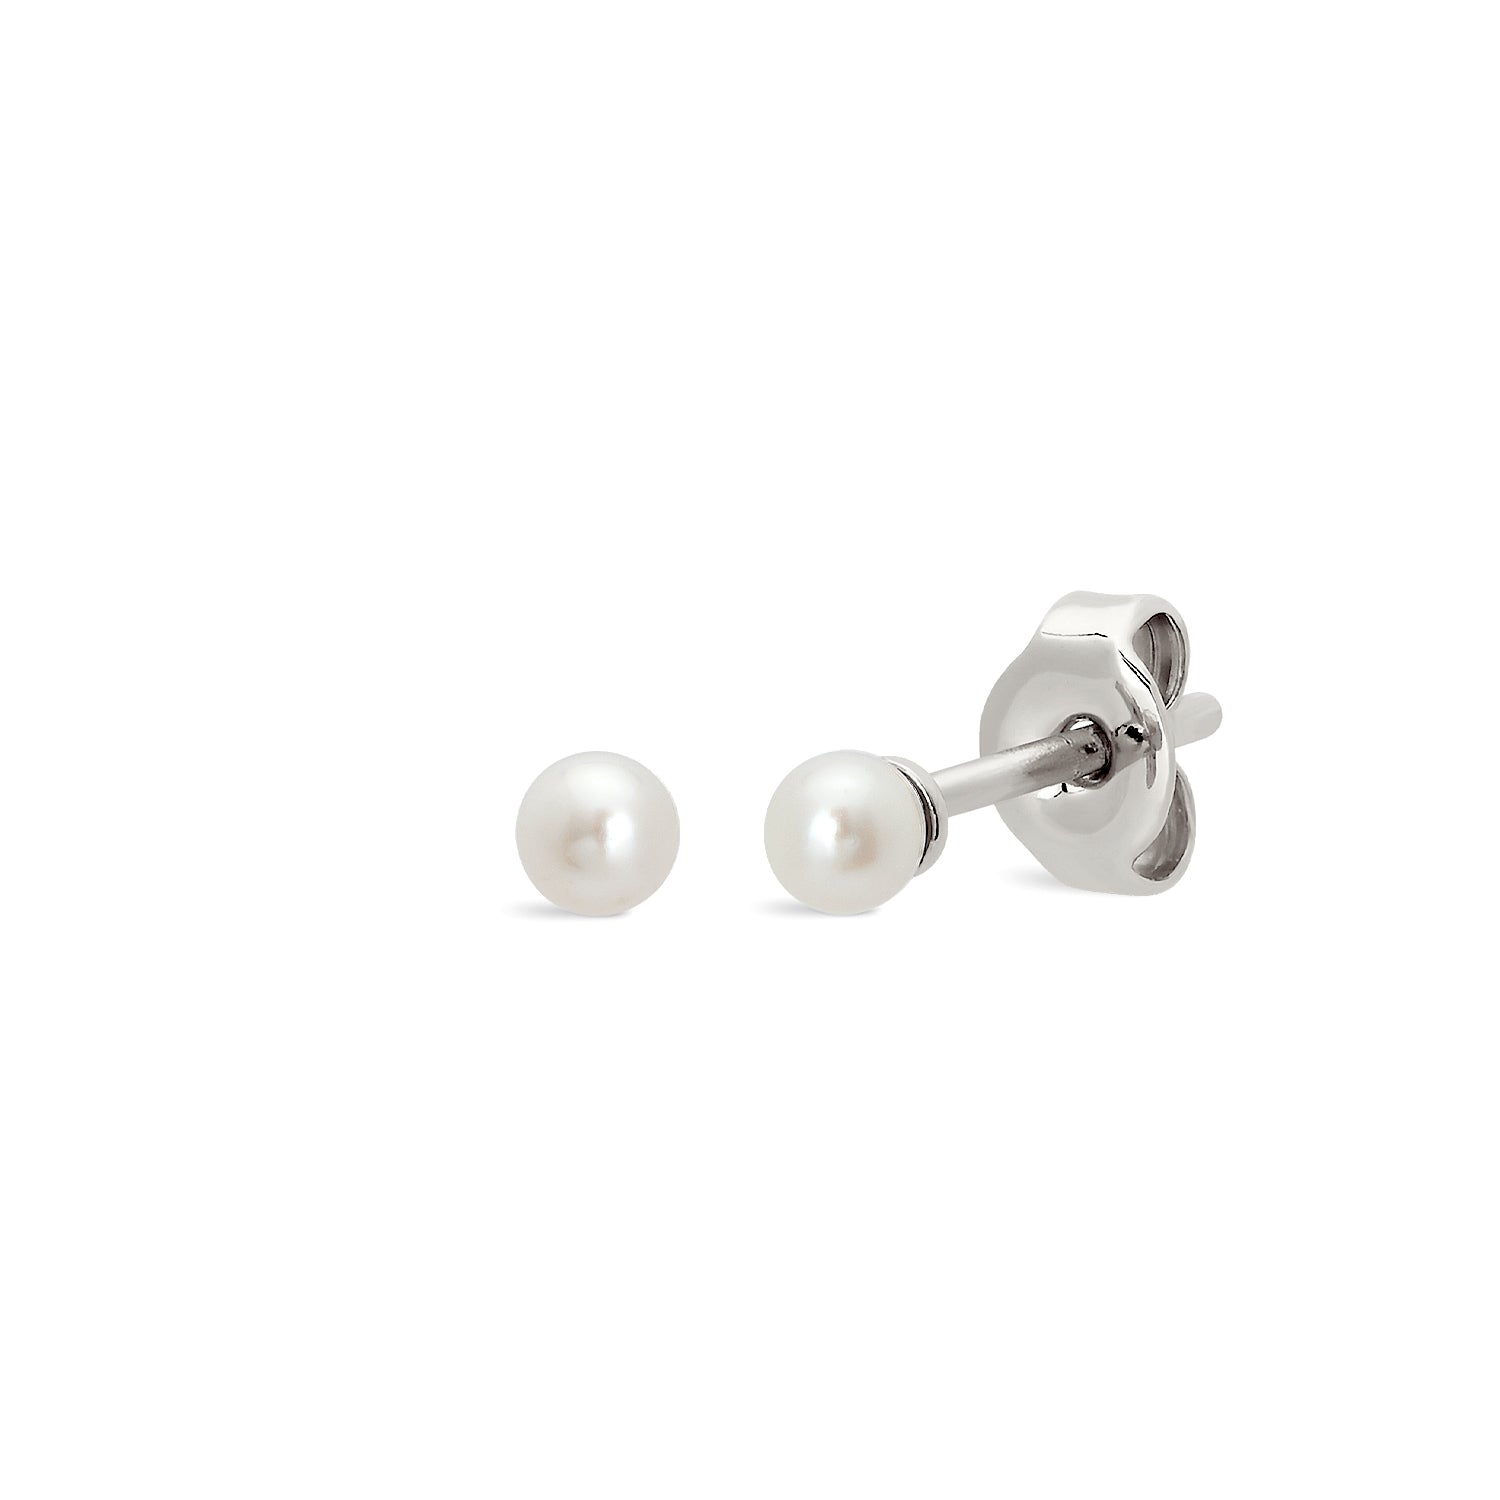 Vintage CHANEL white teardrop faux pearl dangle earrings with blue